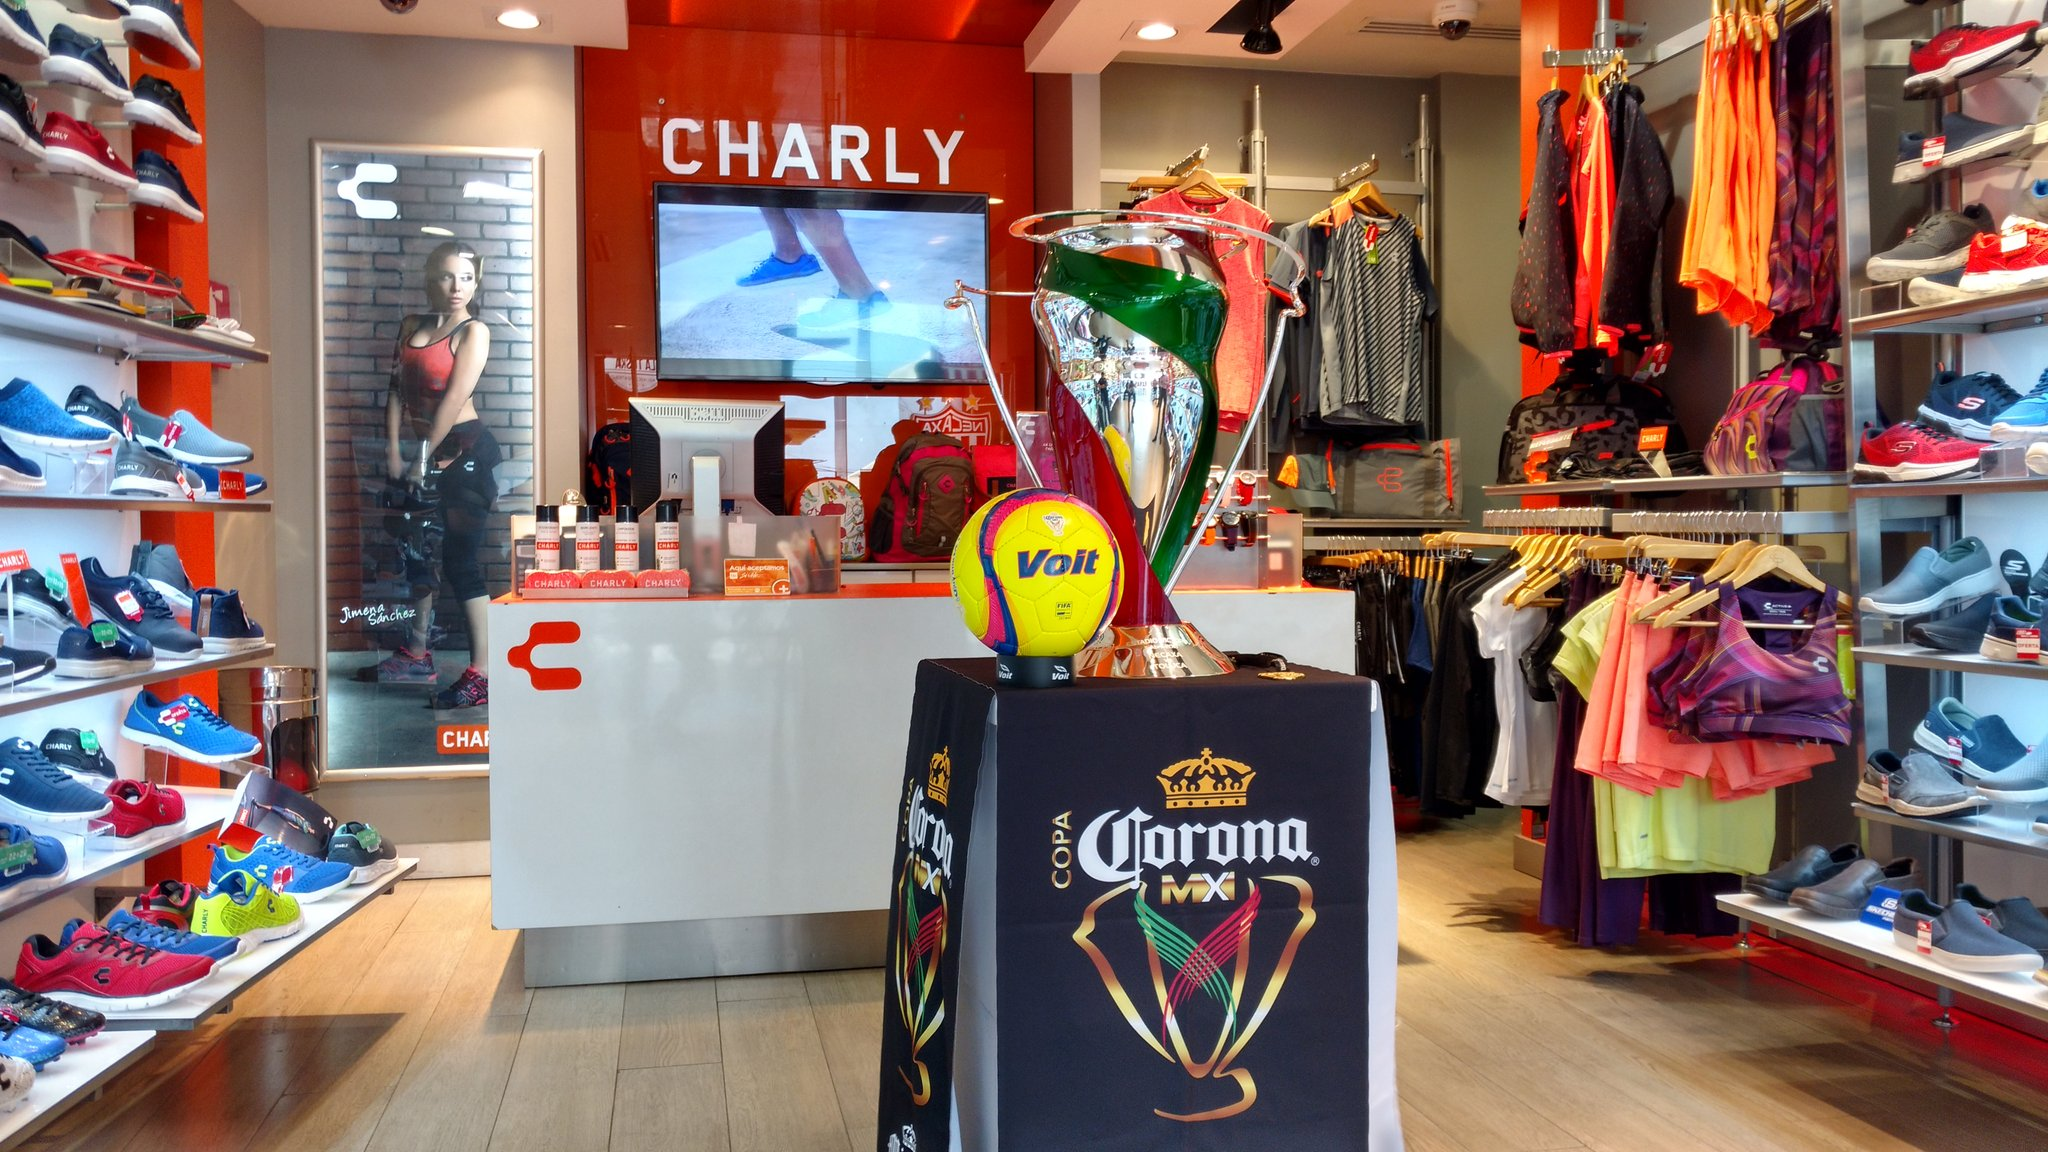 Tienda mexicana “Charly” abre su primera tienda en EE.UU.